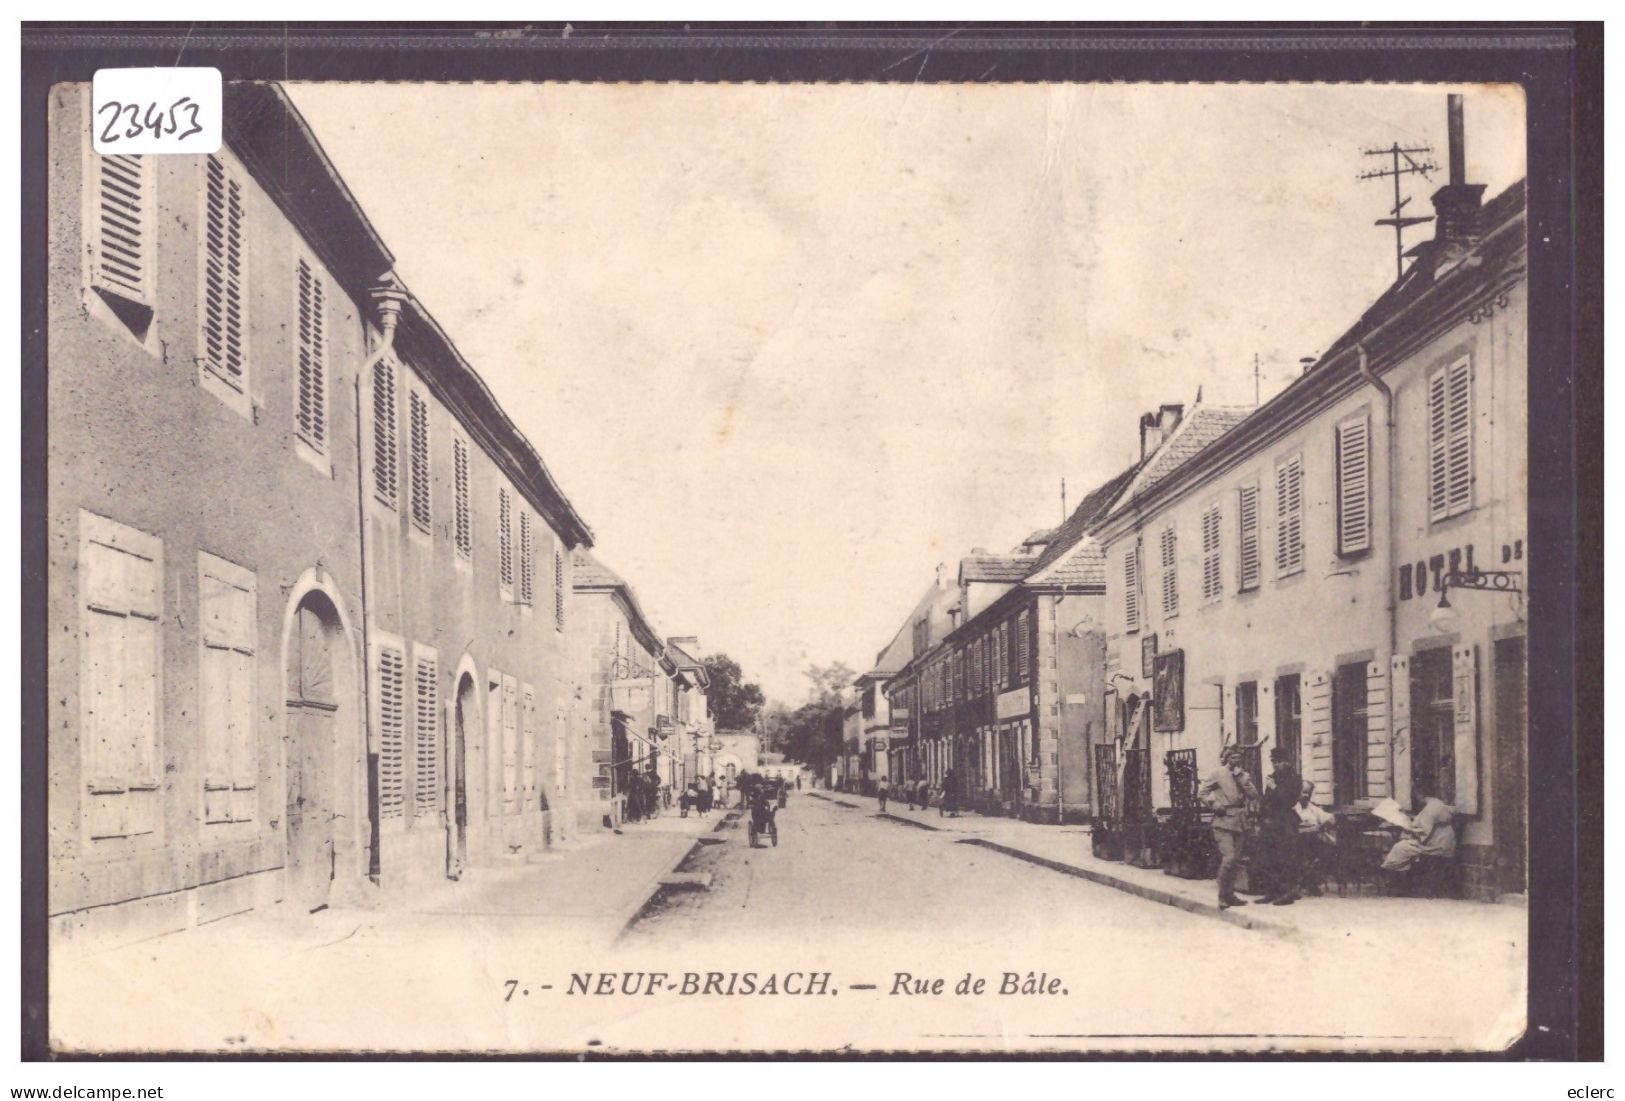 NEUF BRISACH - RUE DE BÂLE - B ( LEGER PLI ) - Neuf Brisach